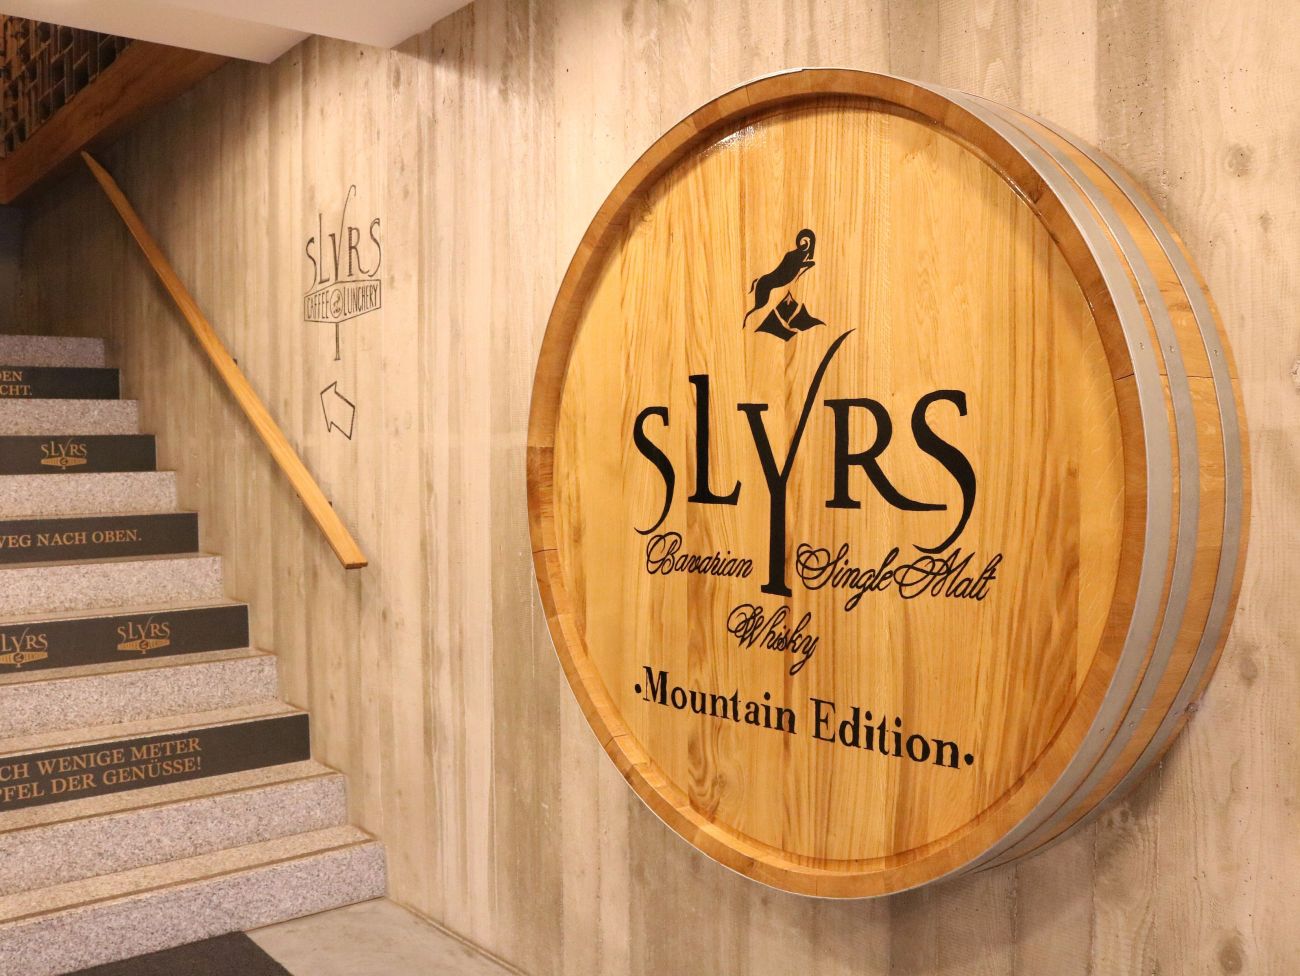 Schliersee: Slyrs – Whisky aus Bayern